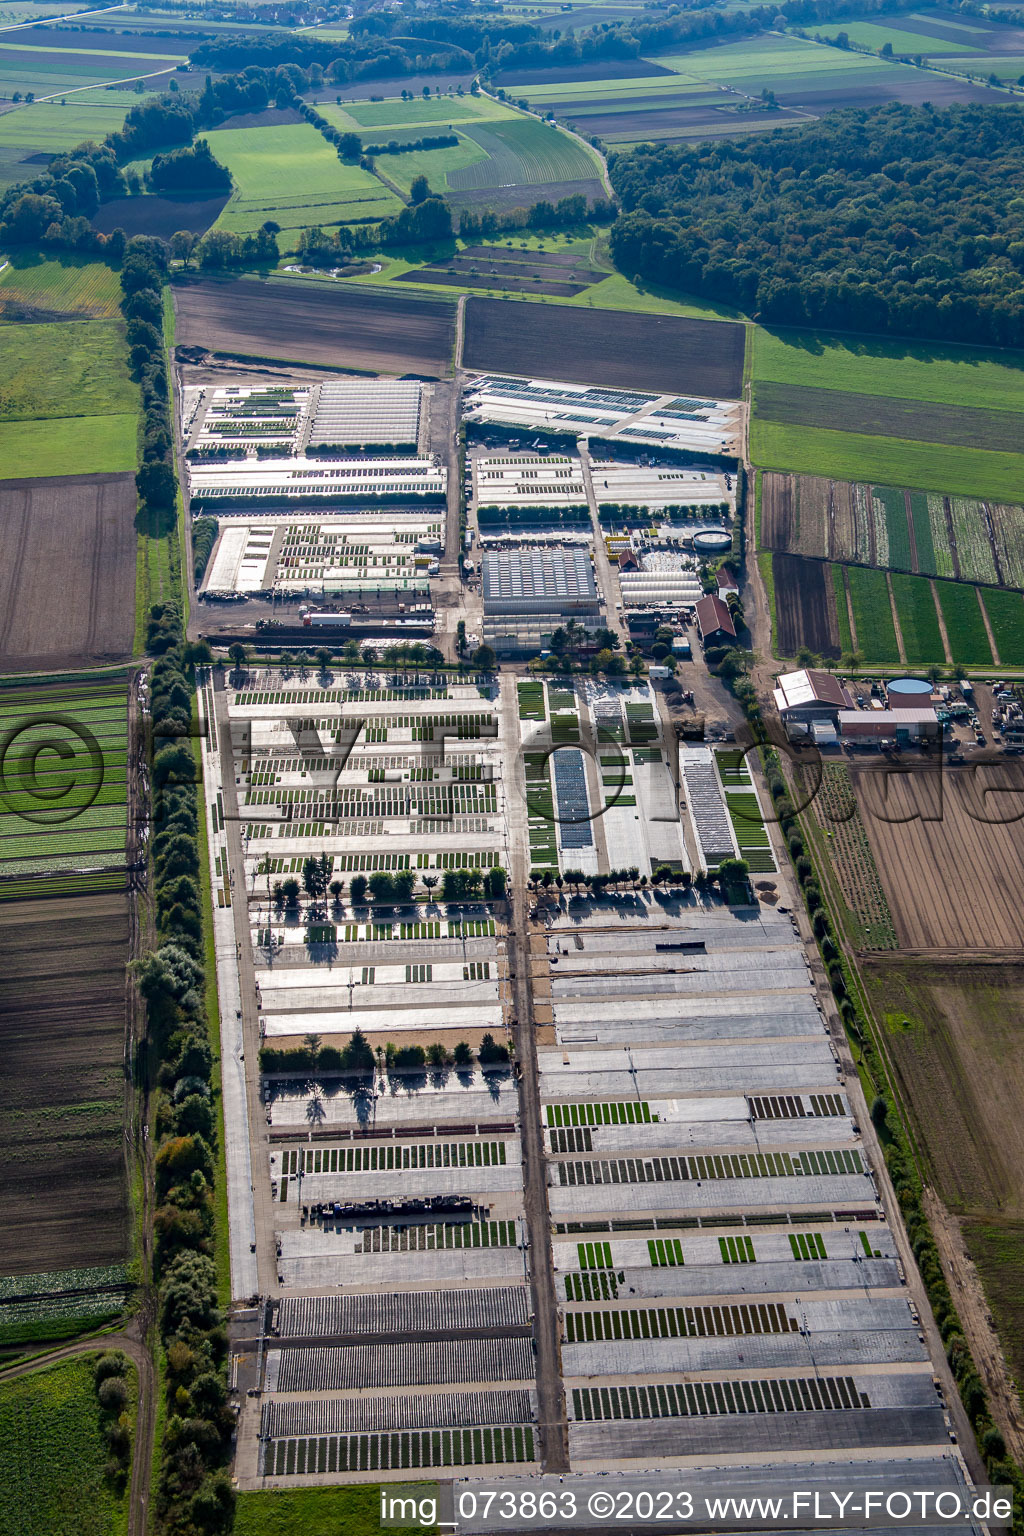 Vue aérienne de Marché aux plantes Dieter Denzer à Gochsheim dans le département Bavière, Allemagne